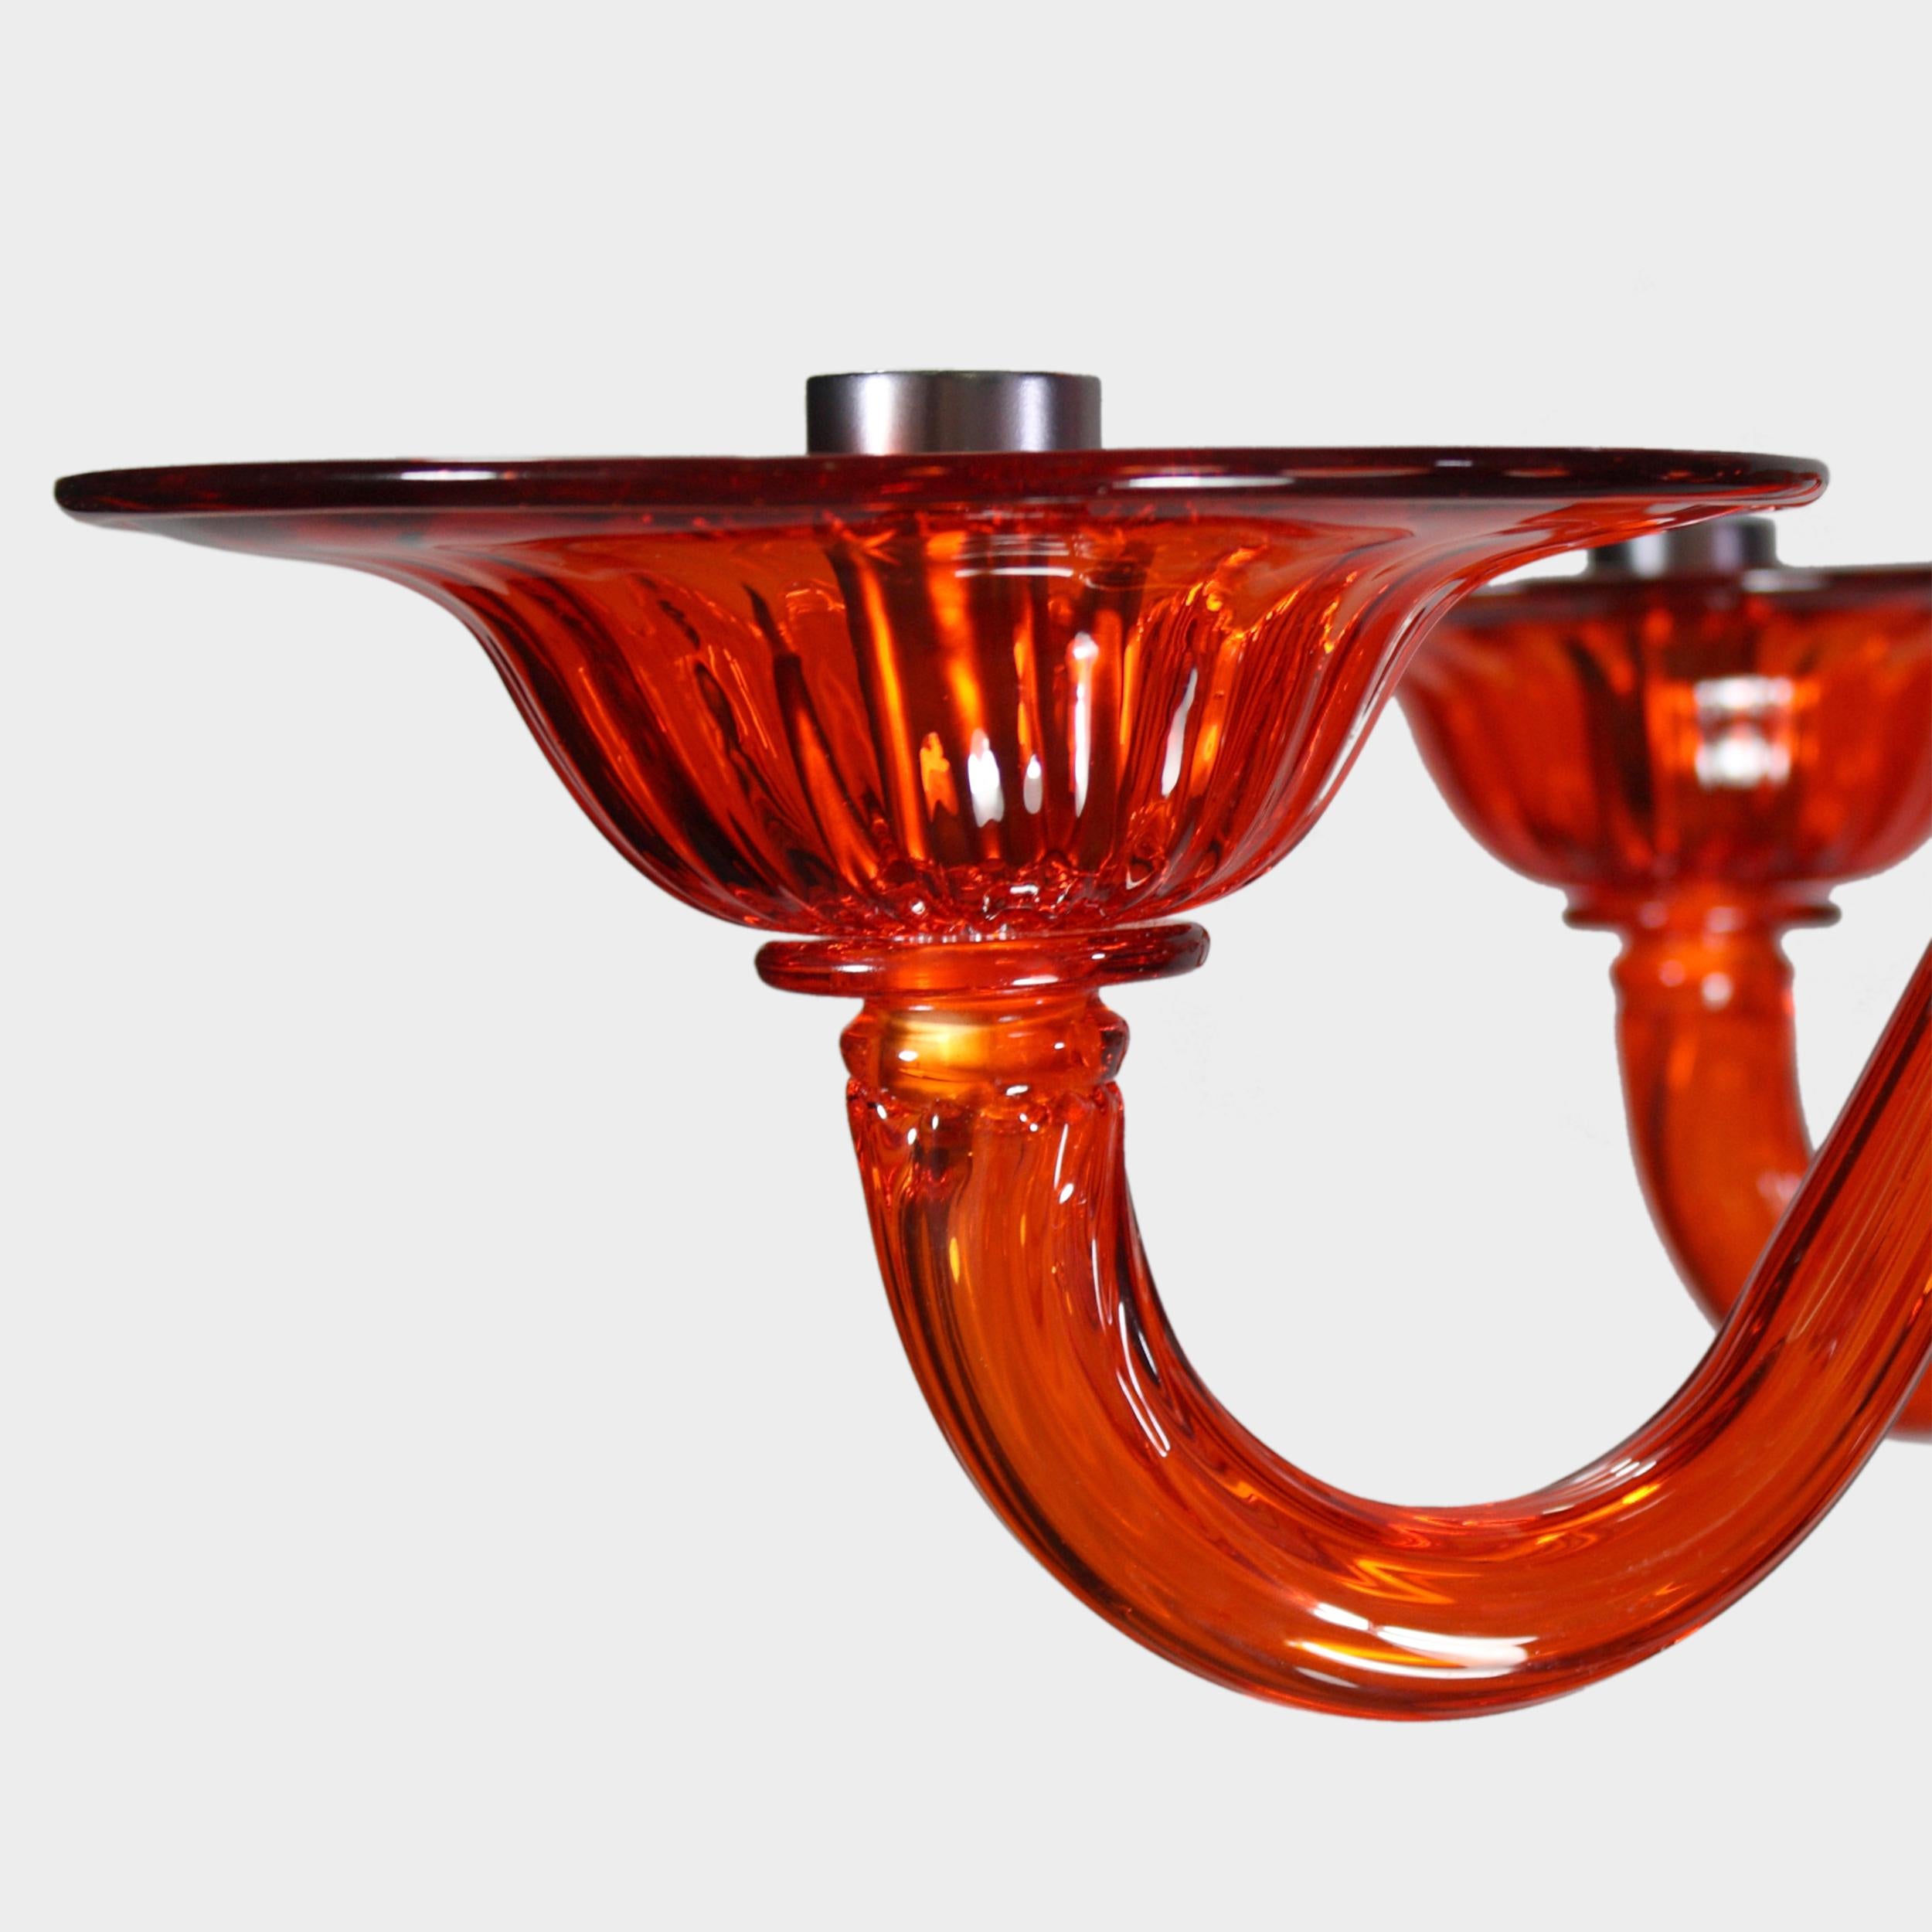 Simplicissimus 360 Kronleuchter mit 6 Leuchten aus orangefarbenem Kunstglas von Multiforme Lighting - Italien.
Diese Collection'S aus Murano-Glas zeichnet sich durch ihre außergewöhnliche Schlichtheit aus. Es ist das Ergebnis einer Forschung, die